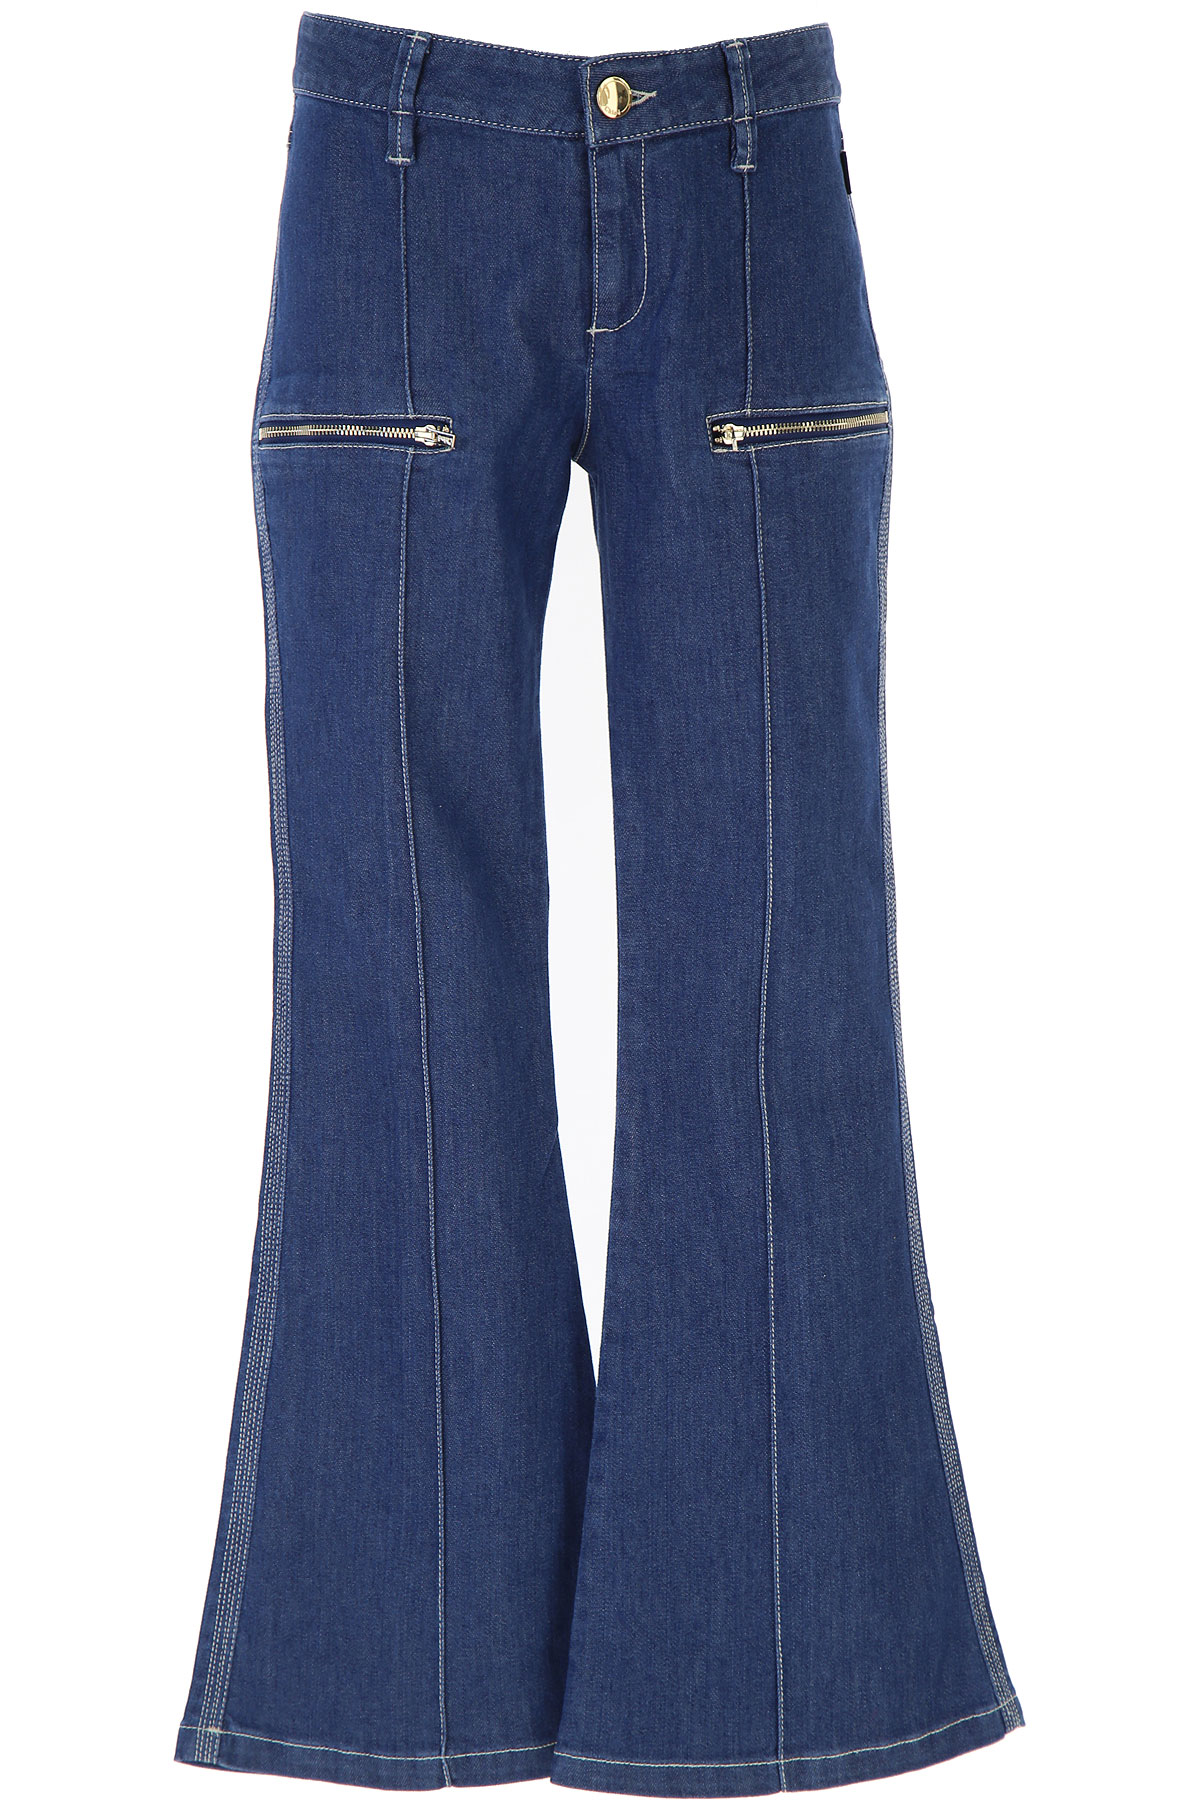 Chloe Kinder Jeans für Mädchen Günstig im Sale, Denim- Blau, Baumwolle, 2017, 10Y 12Y 14Y 4Y 8Y